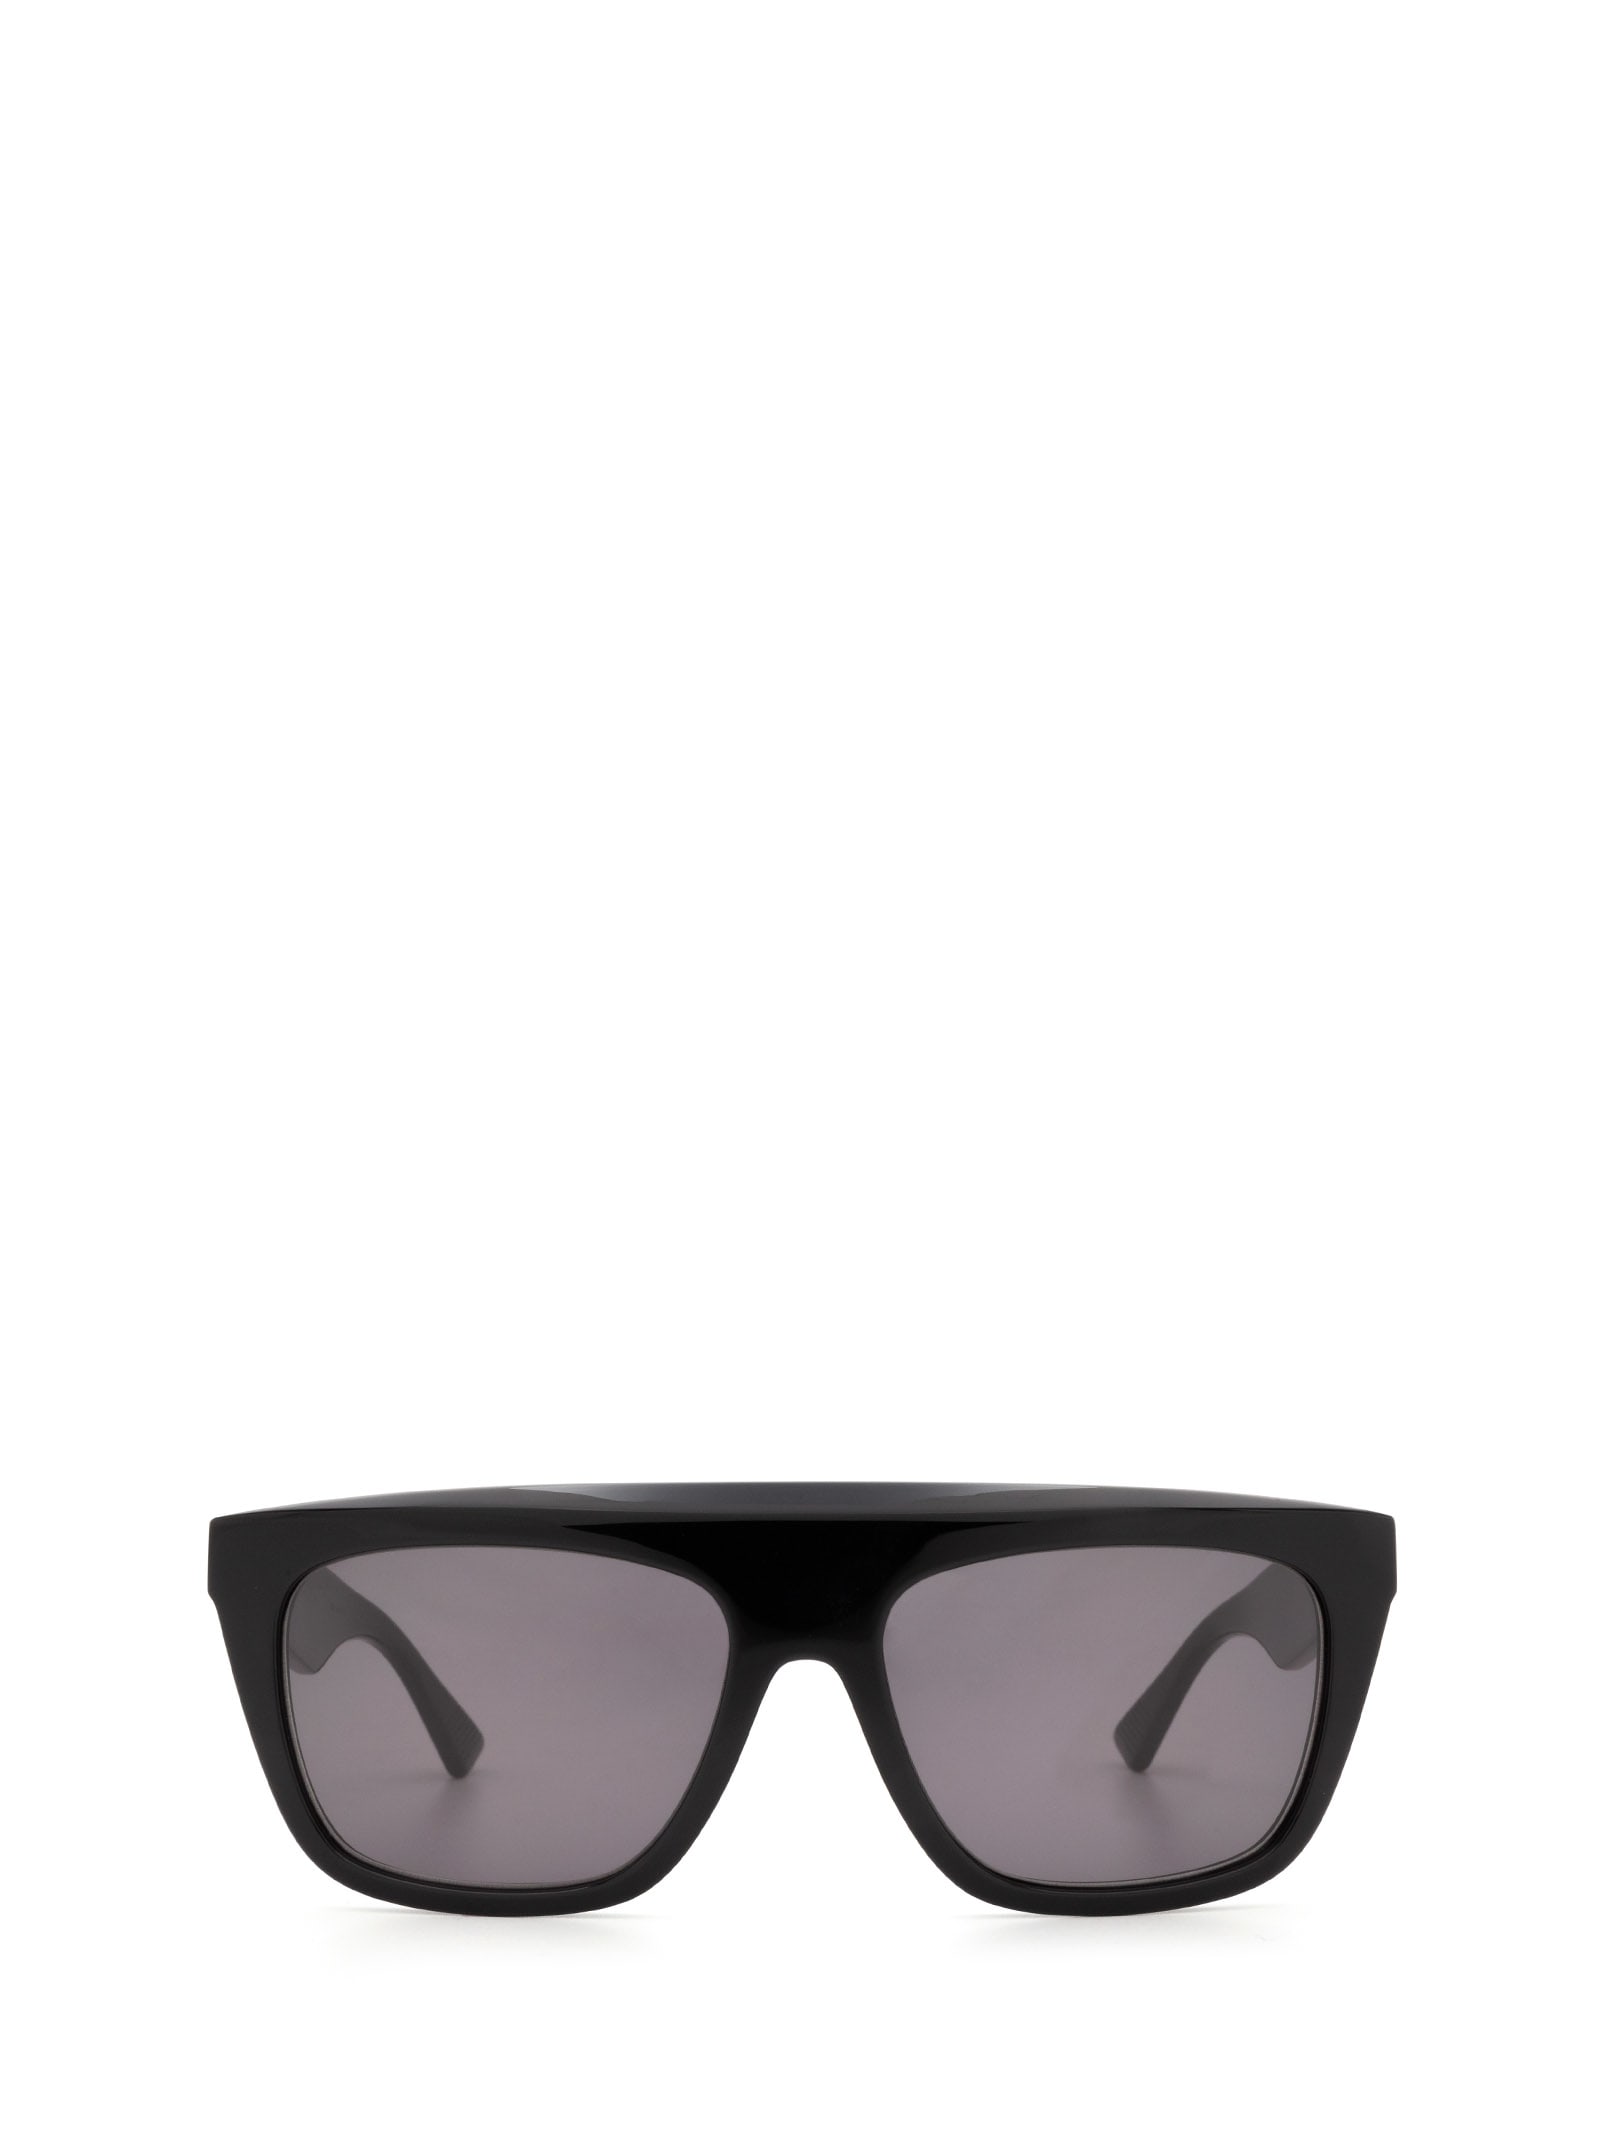 Bottega Veneta Bottega Veneta Bv1060s Black Sunglasses